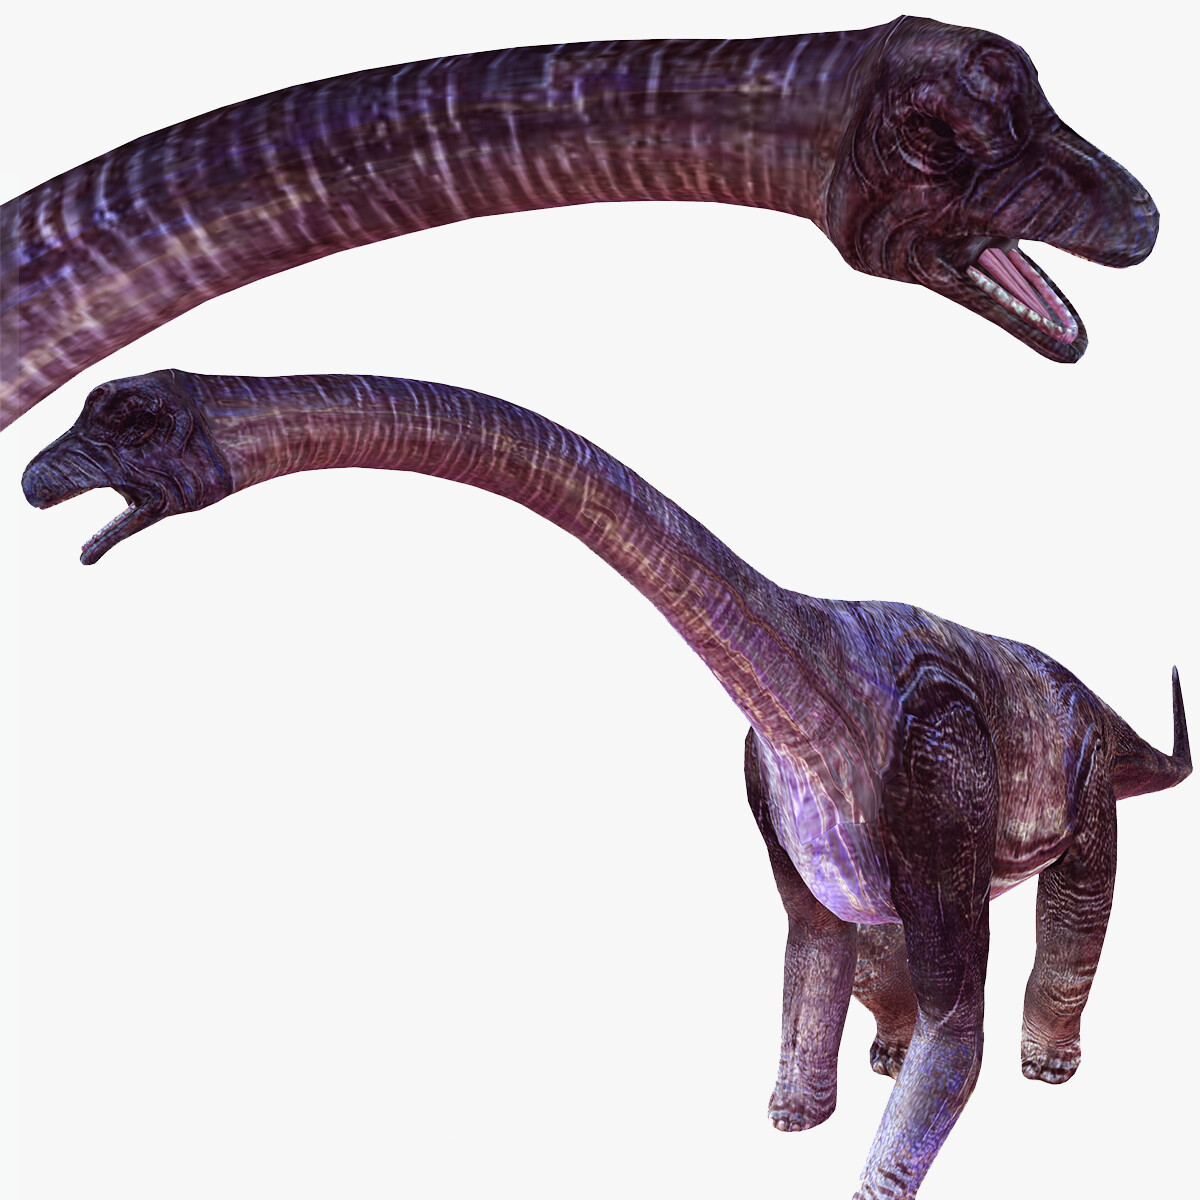 Dinossauro (2000), Wiki